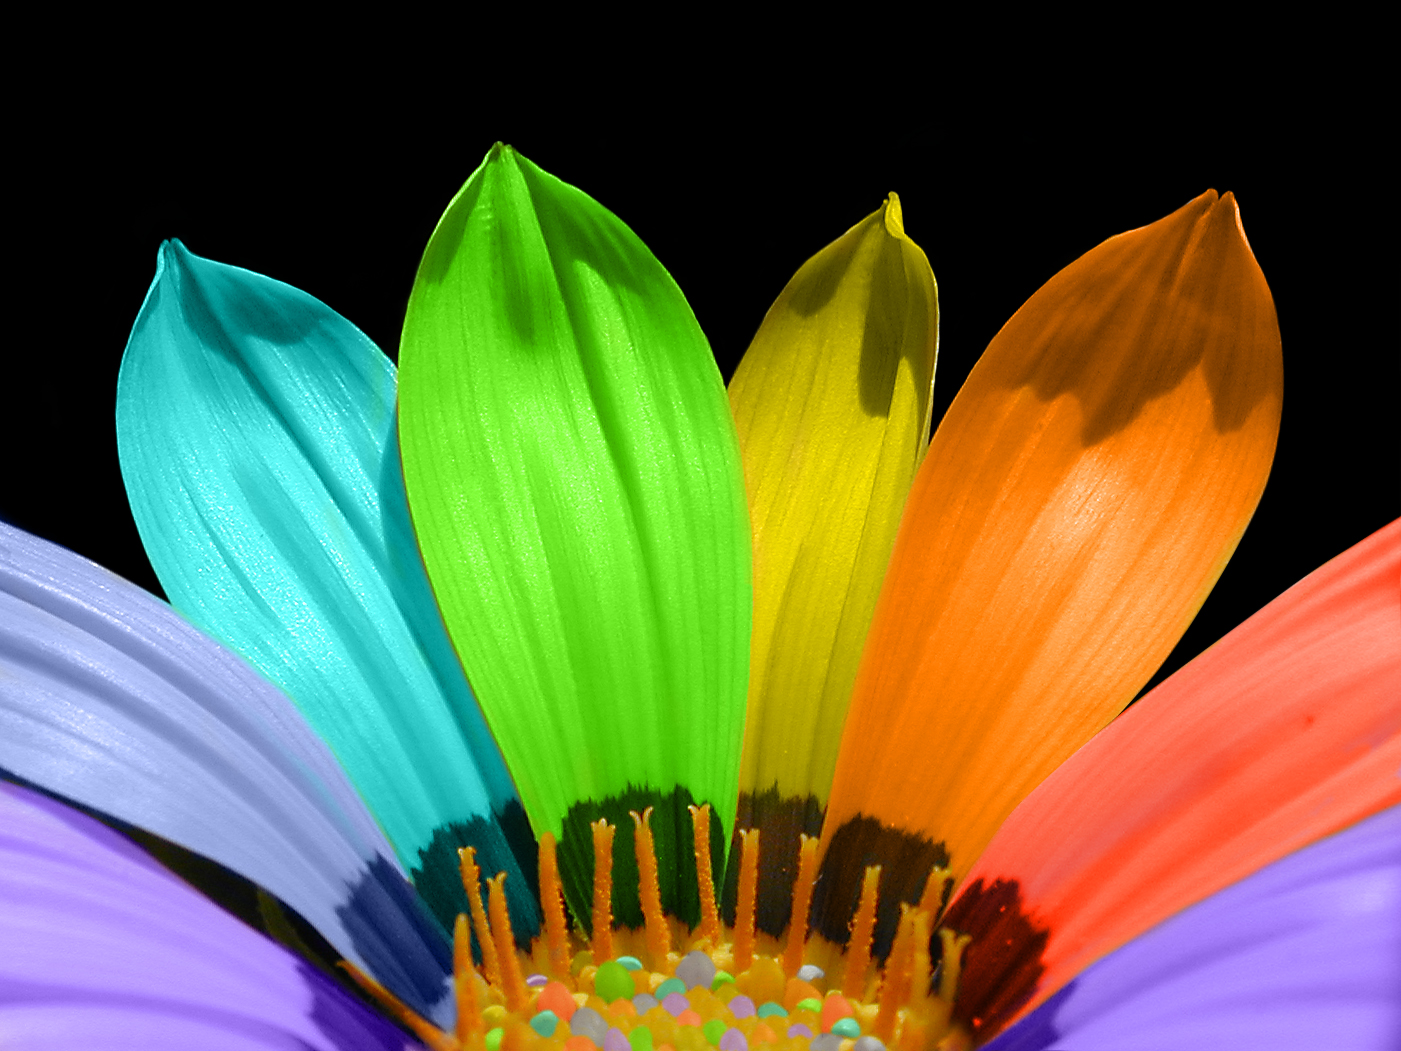 1. Rainbow flower tattoo designs - wide 4